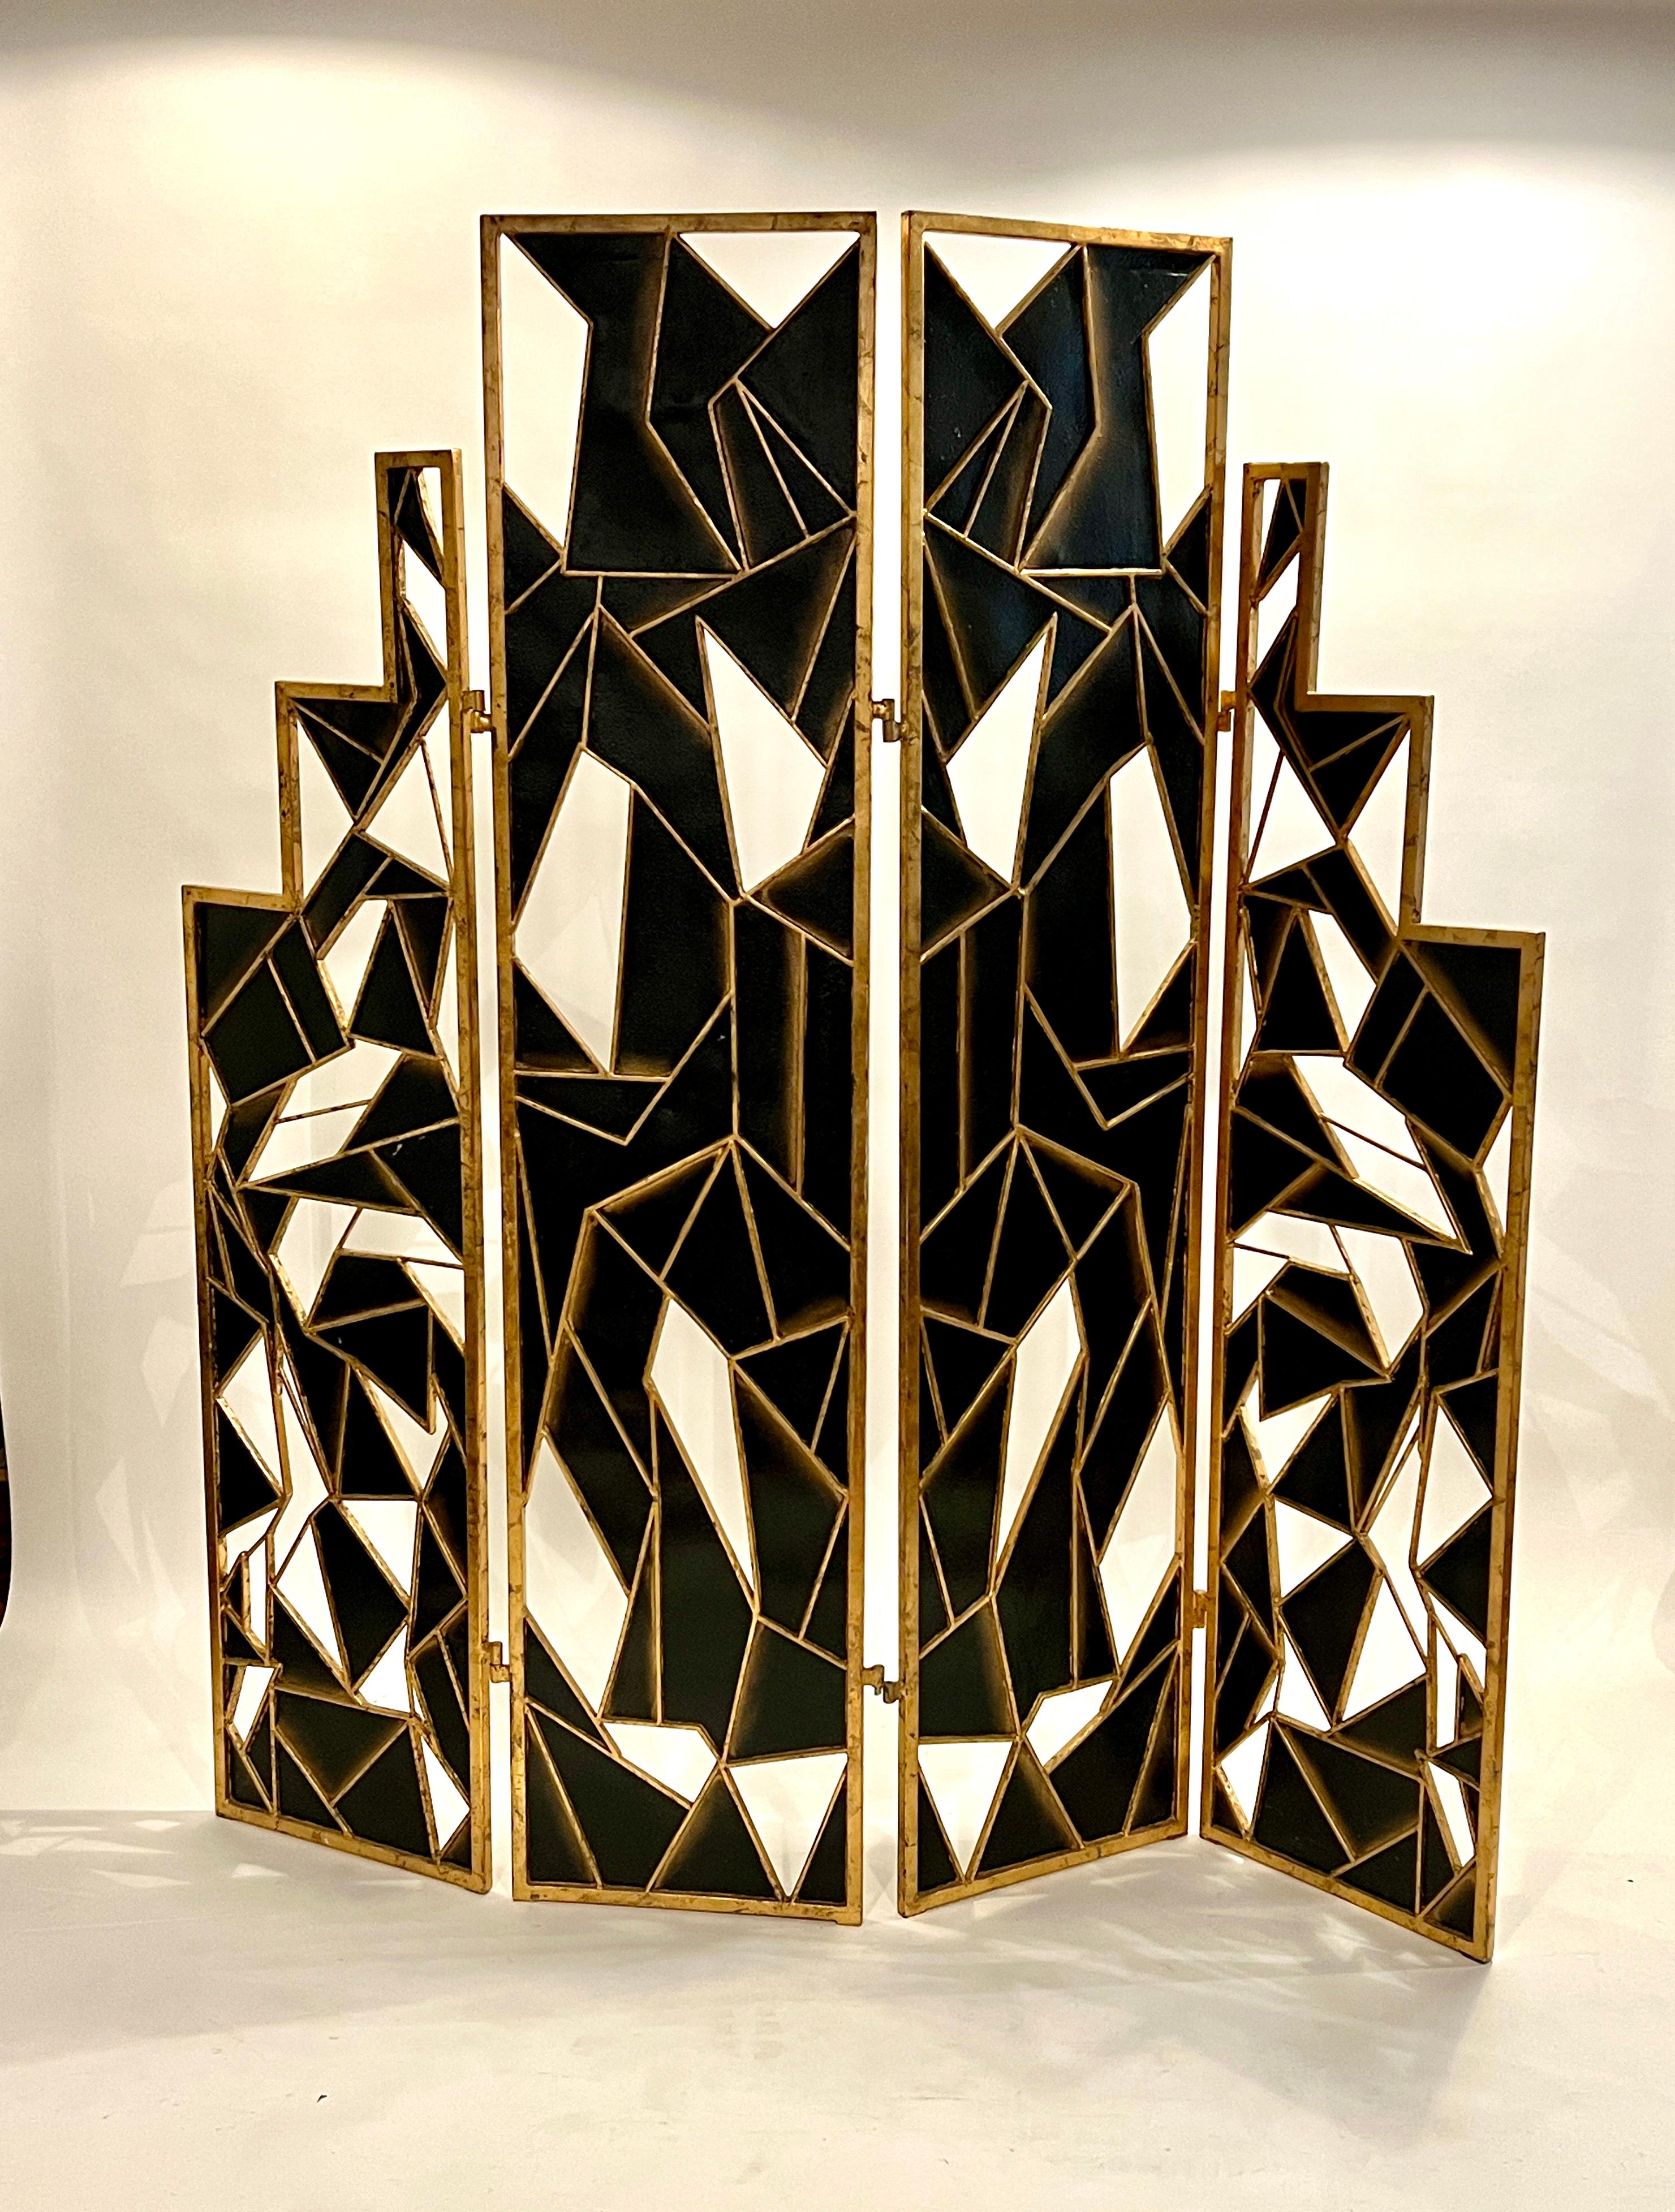 Art-Deco-Raumteiler aus dem 20. Jahrhundert in einem patinierten, goldfarbenen Metallrahmen mit schwarz bemalten abstrakten Paneelen und ausgeschnittenen Fenstern. Der 4-Panel-Bildschirm kann durch Hakenbefestigungen getrennt werden und zeigt